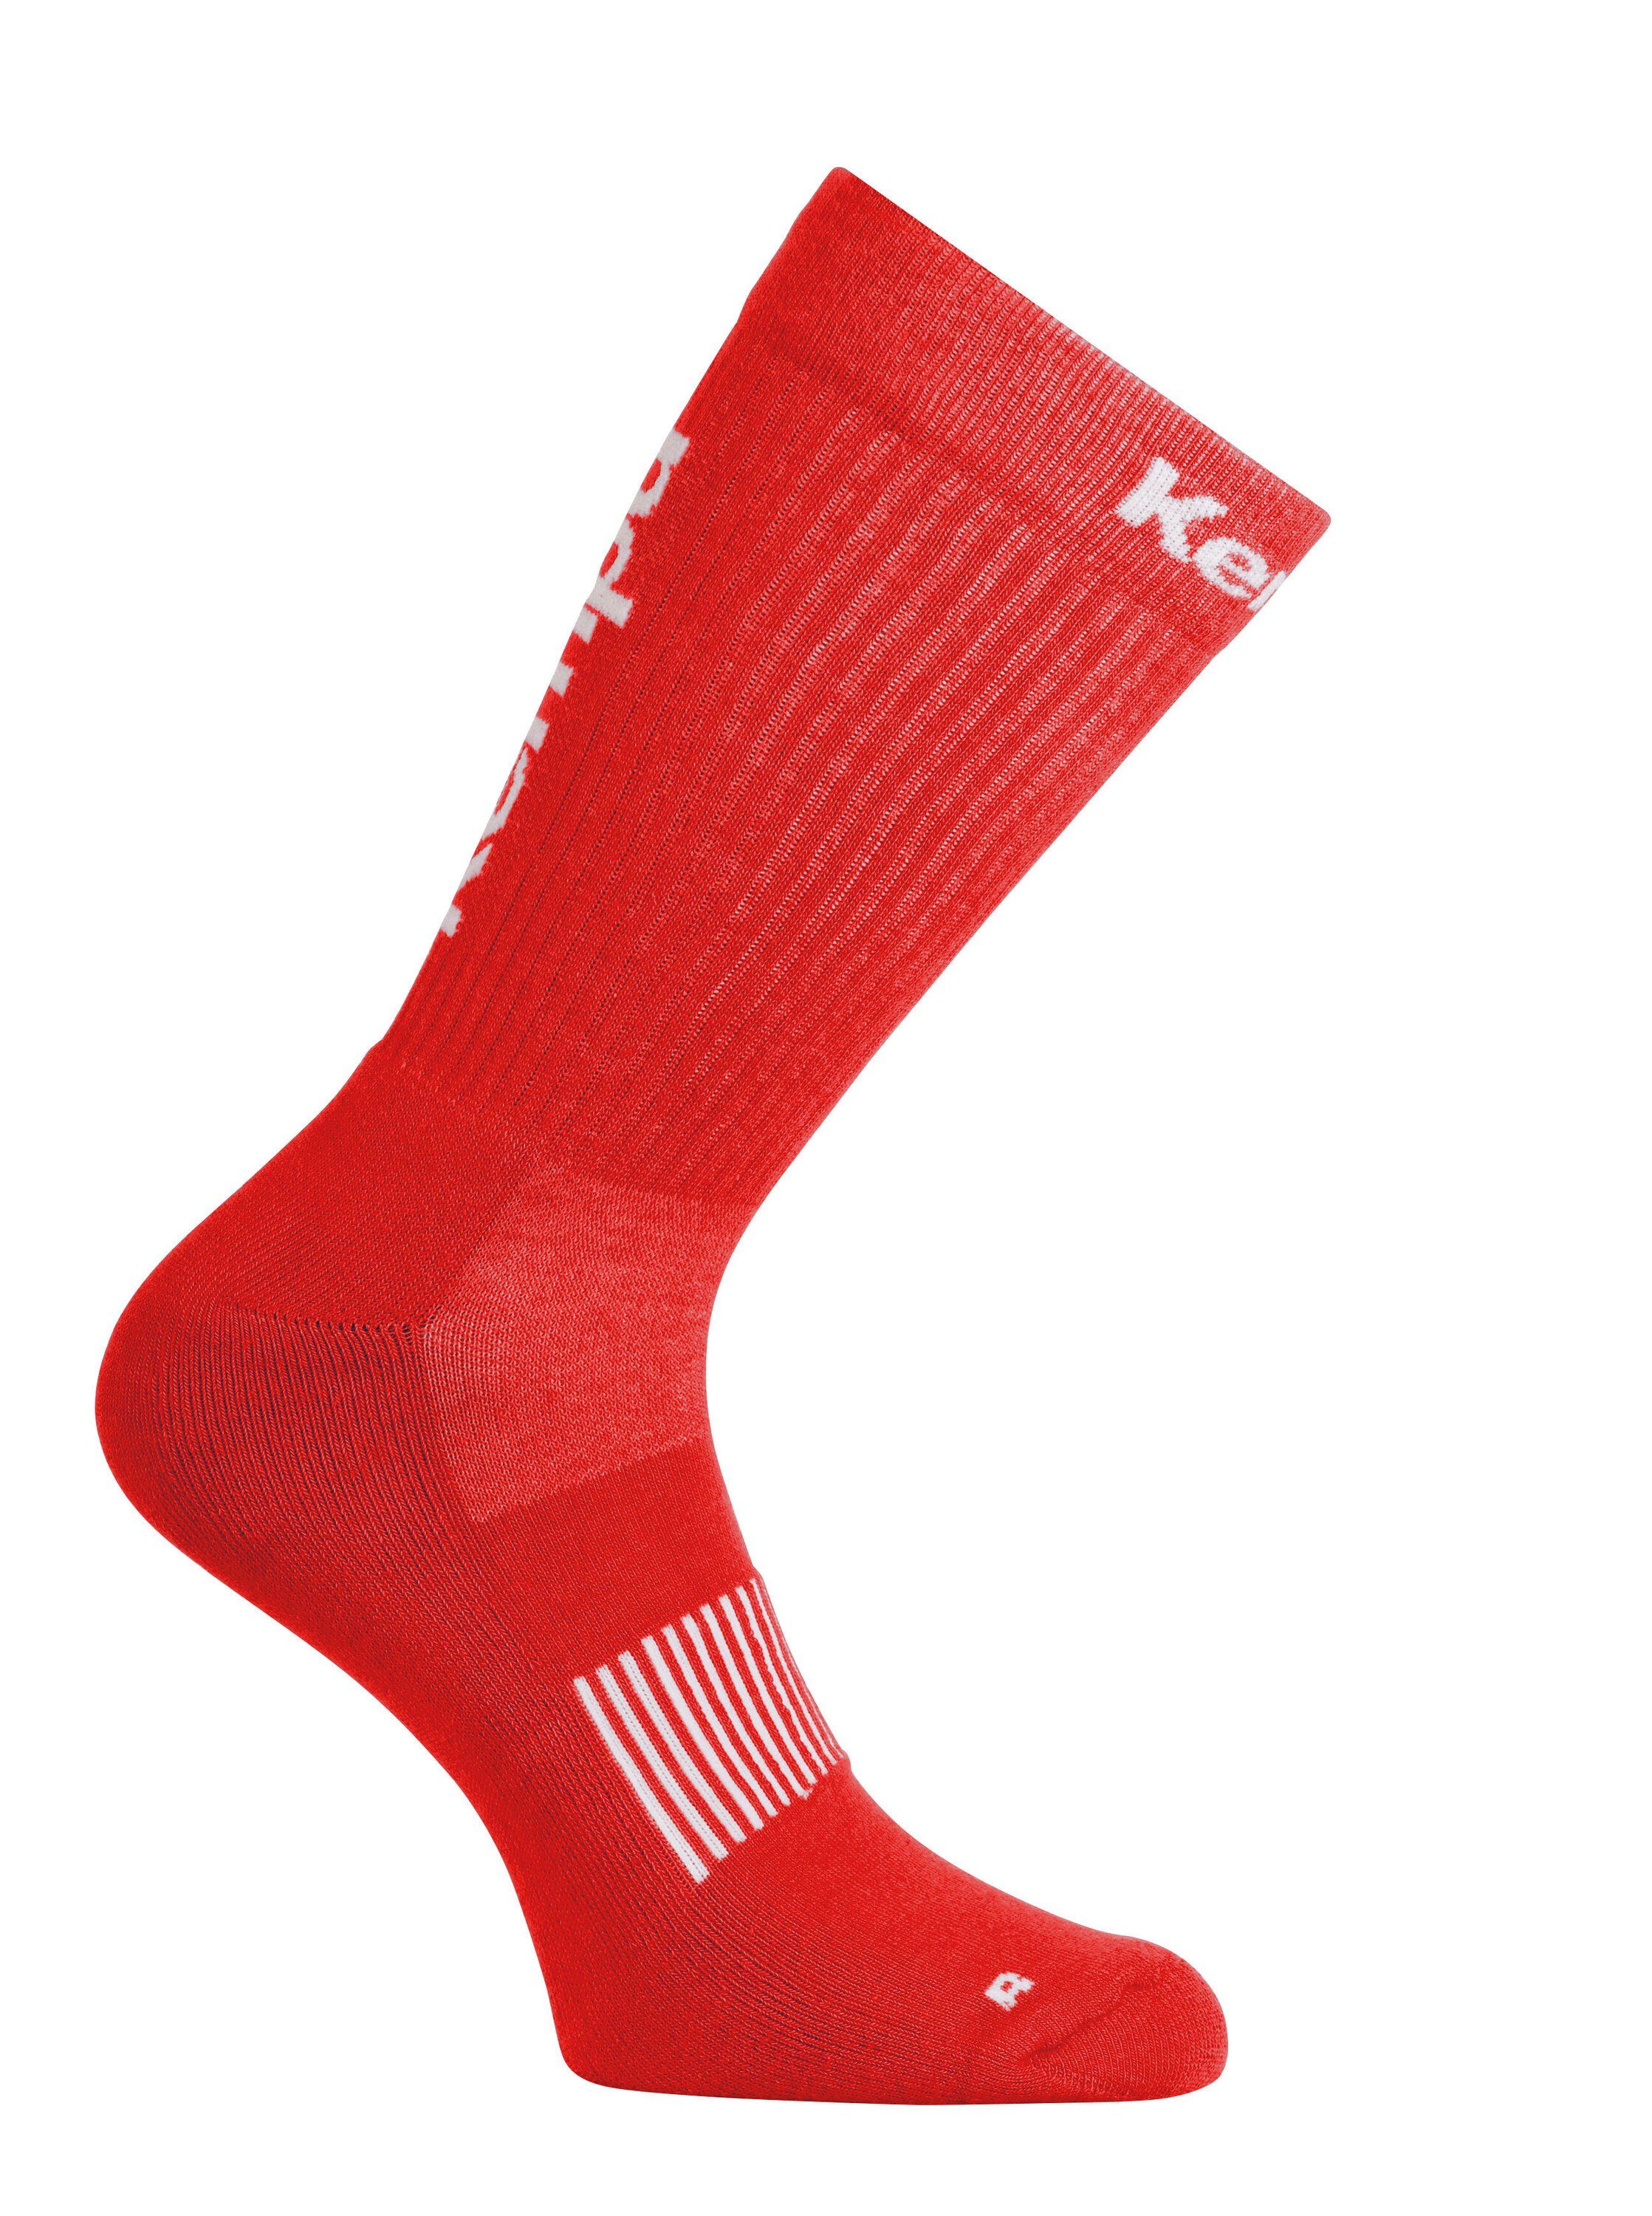 Kempa Socken/Stutzen Fußball Stutzenstrümpfe CLASSIC rot/weiß Kempa LOGO